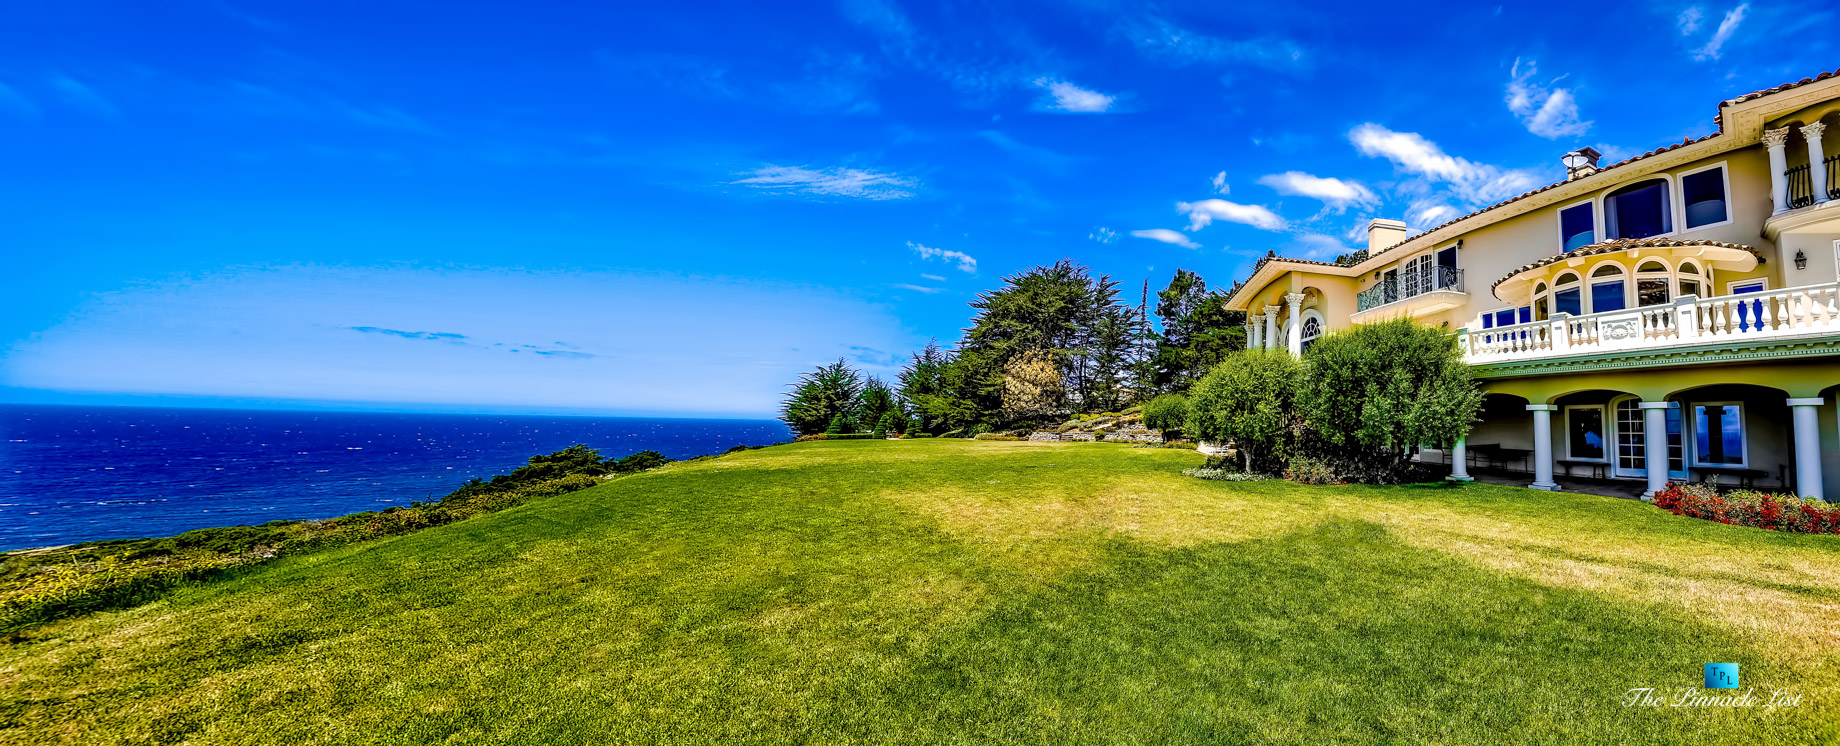 Pano – Villa Viscaya Estate – 112 Holiday Dr, La Selva Beach, CA, USA